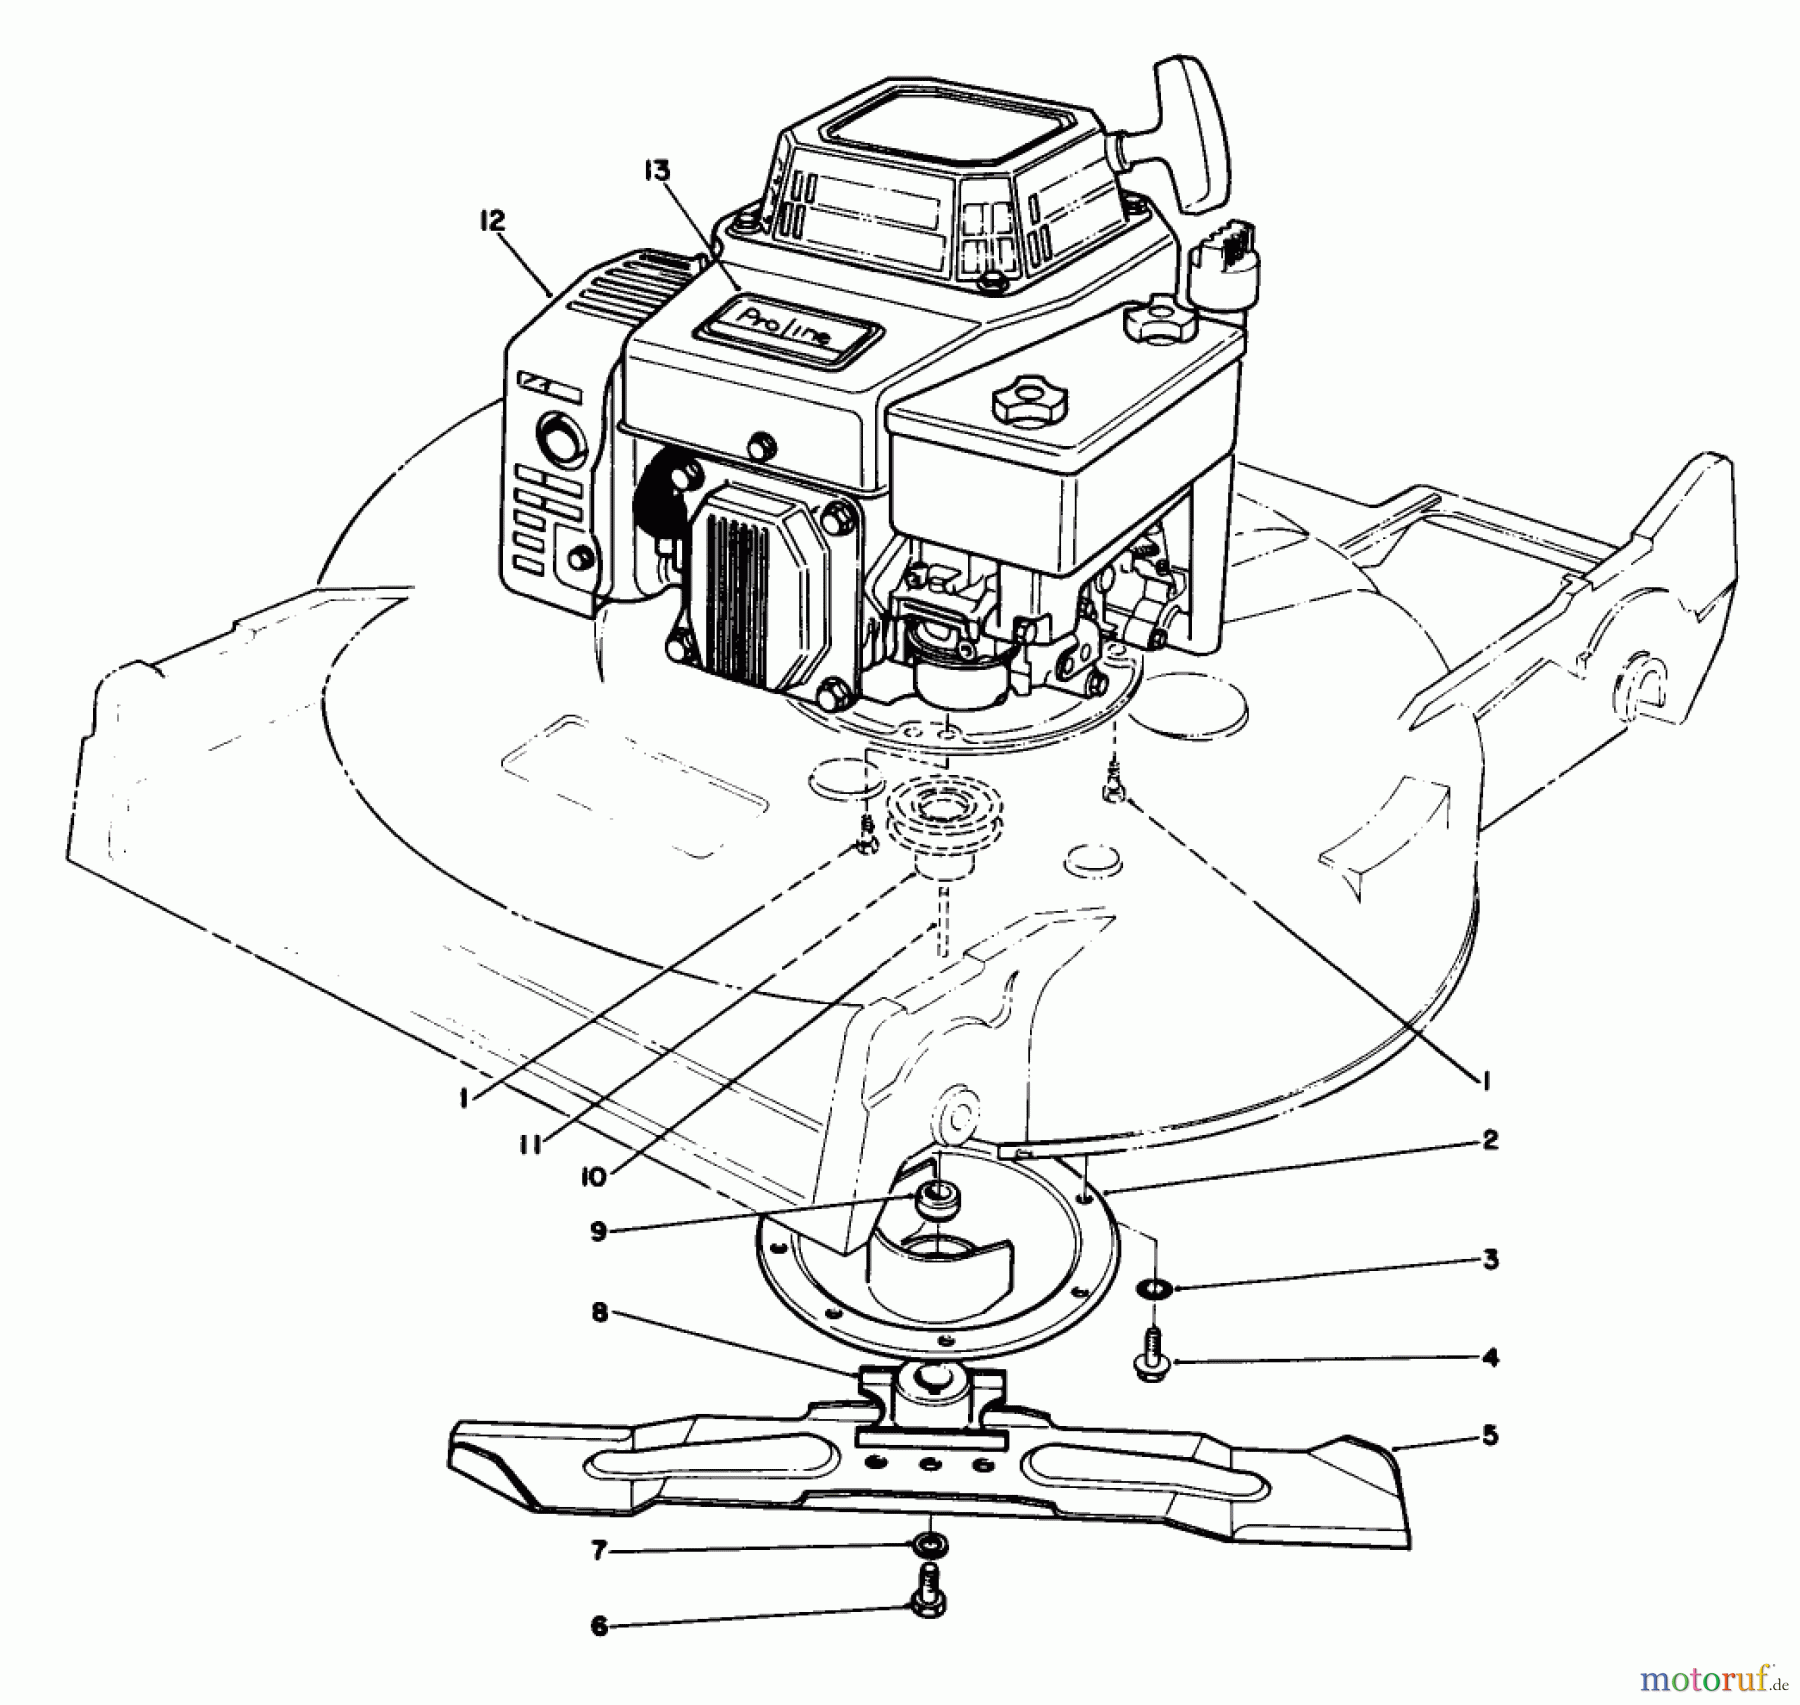  Toro Neu Mowers, Walk-Behind Seite 2 22621C - Toro Lawnmower, 1989 (9000001-9999999) ENGINE ASSEMBLY